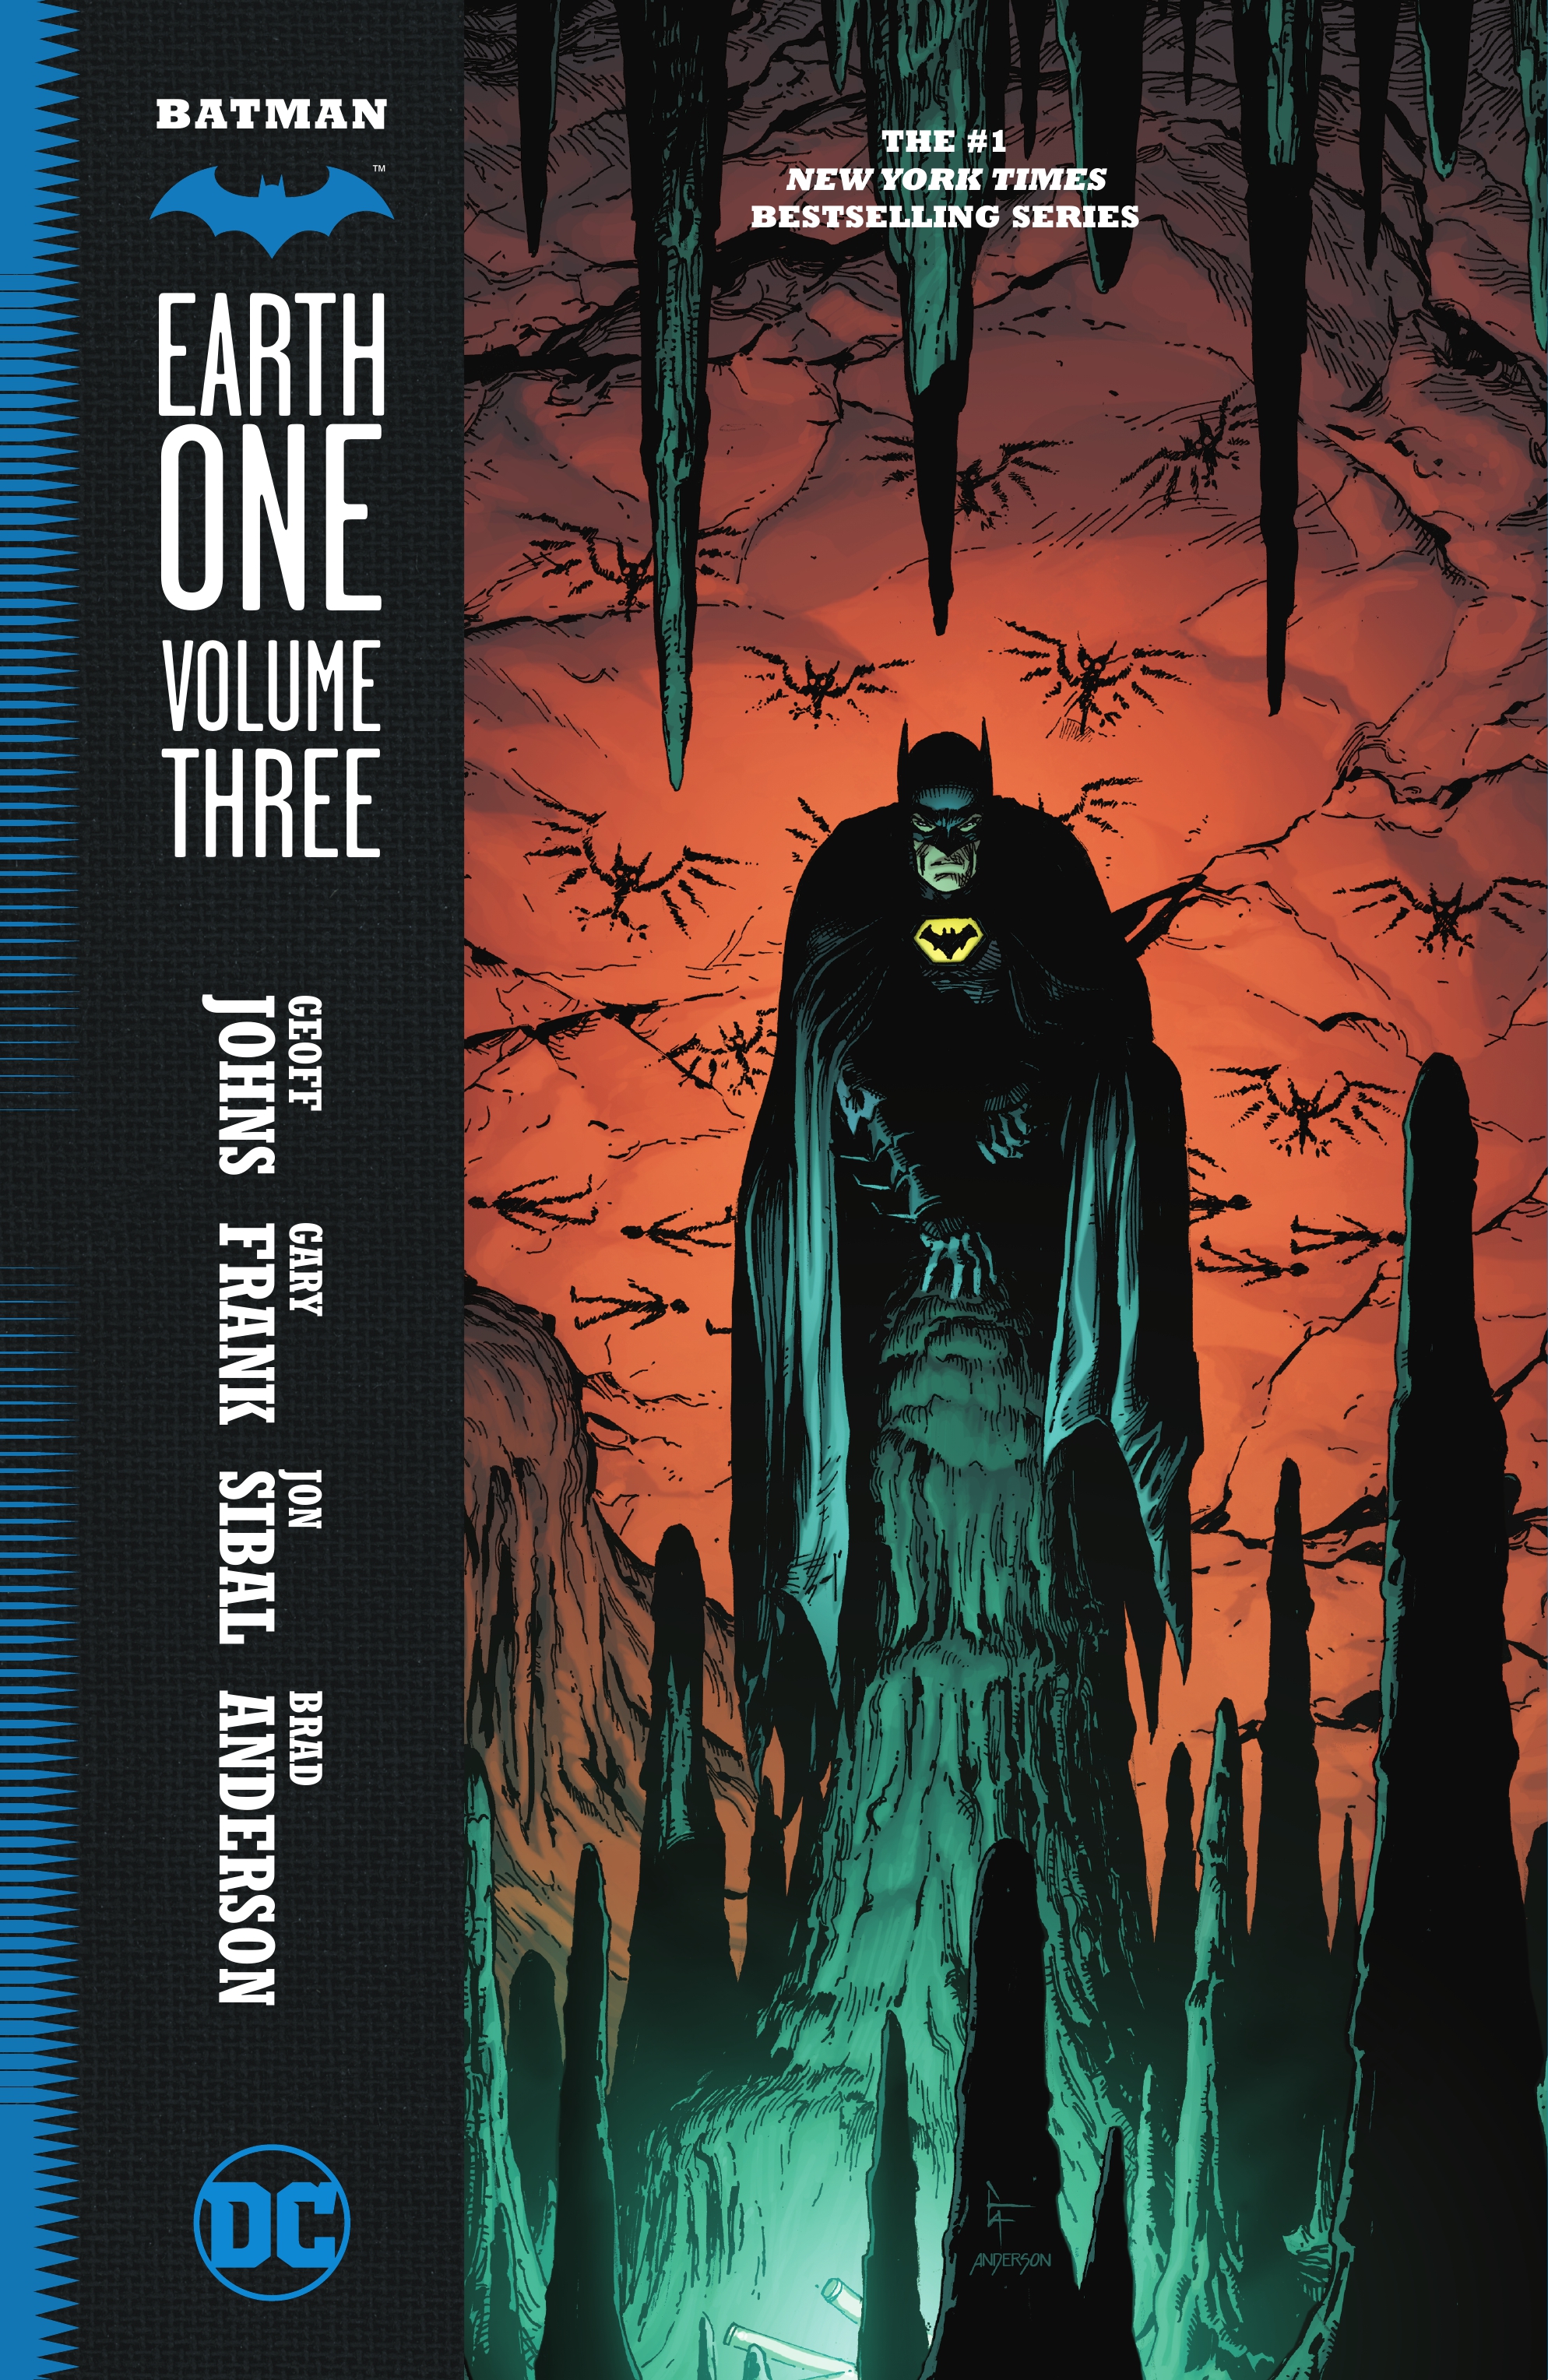 Batman earth one volume 3 read online